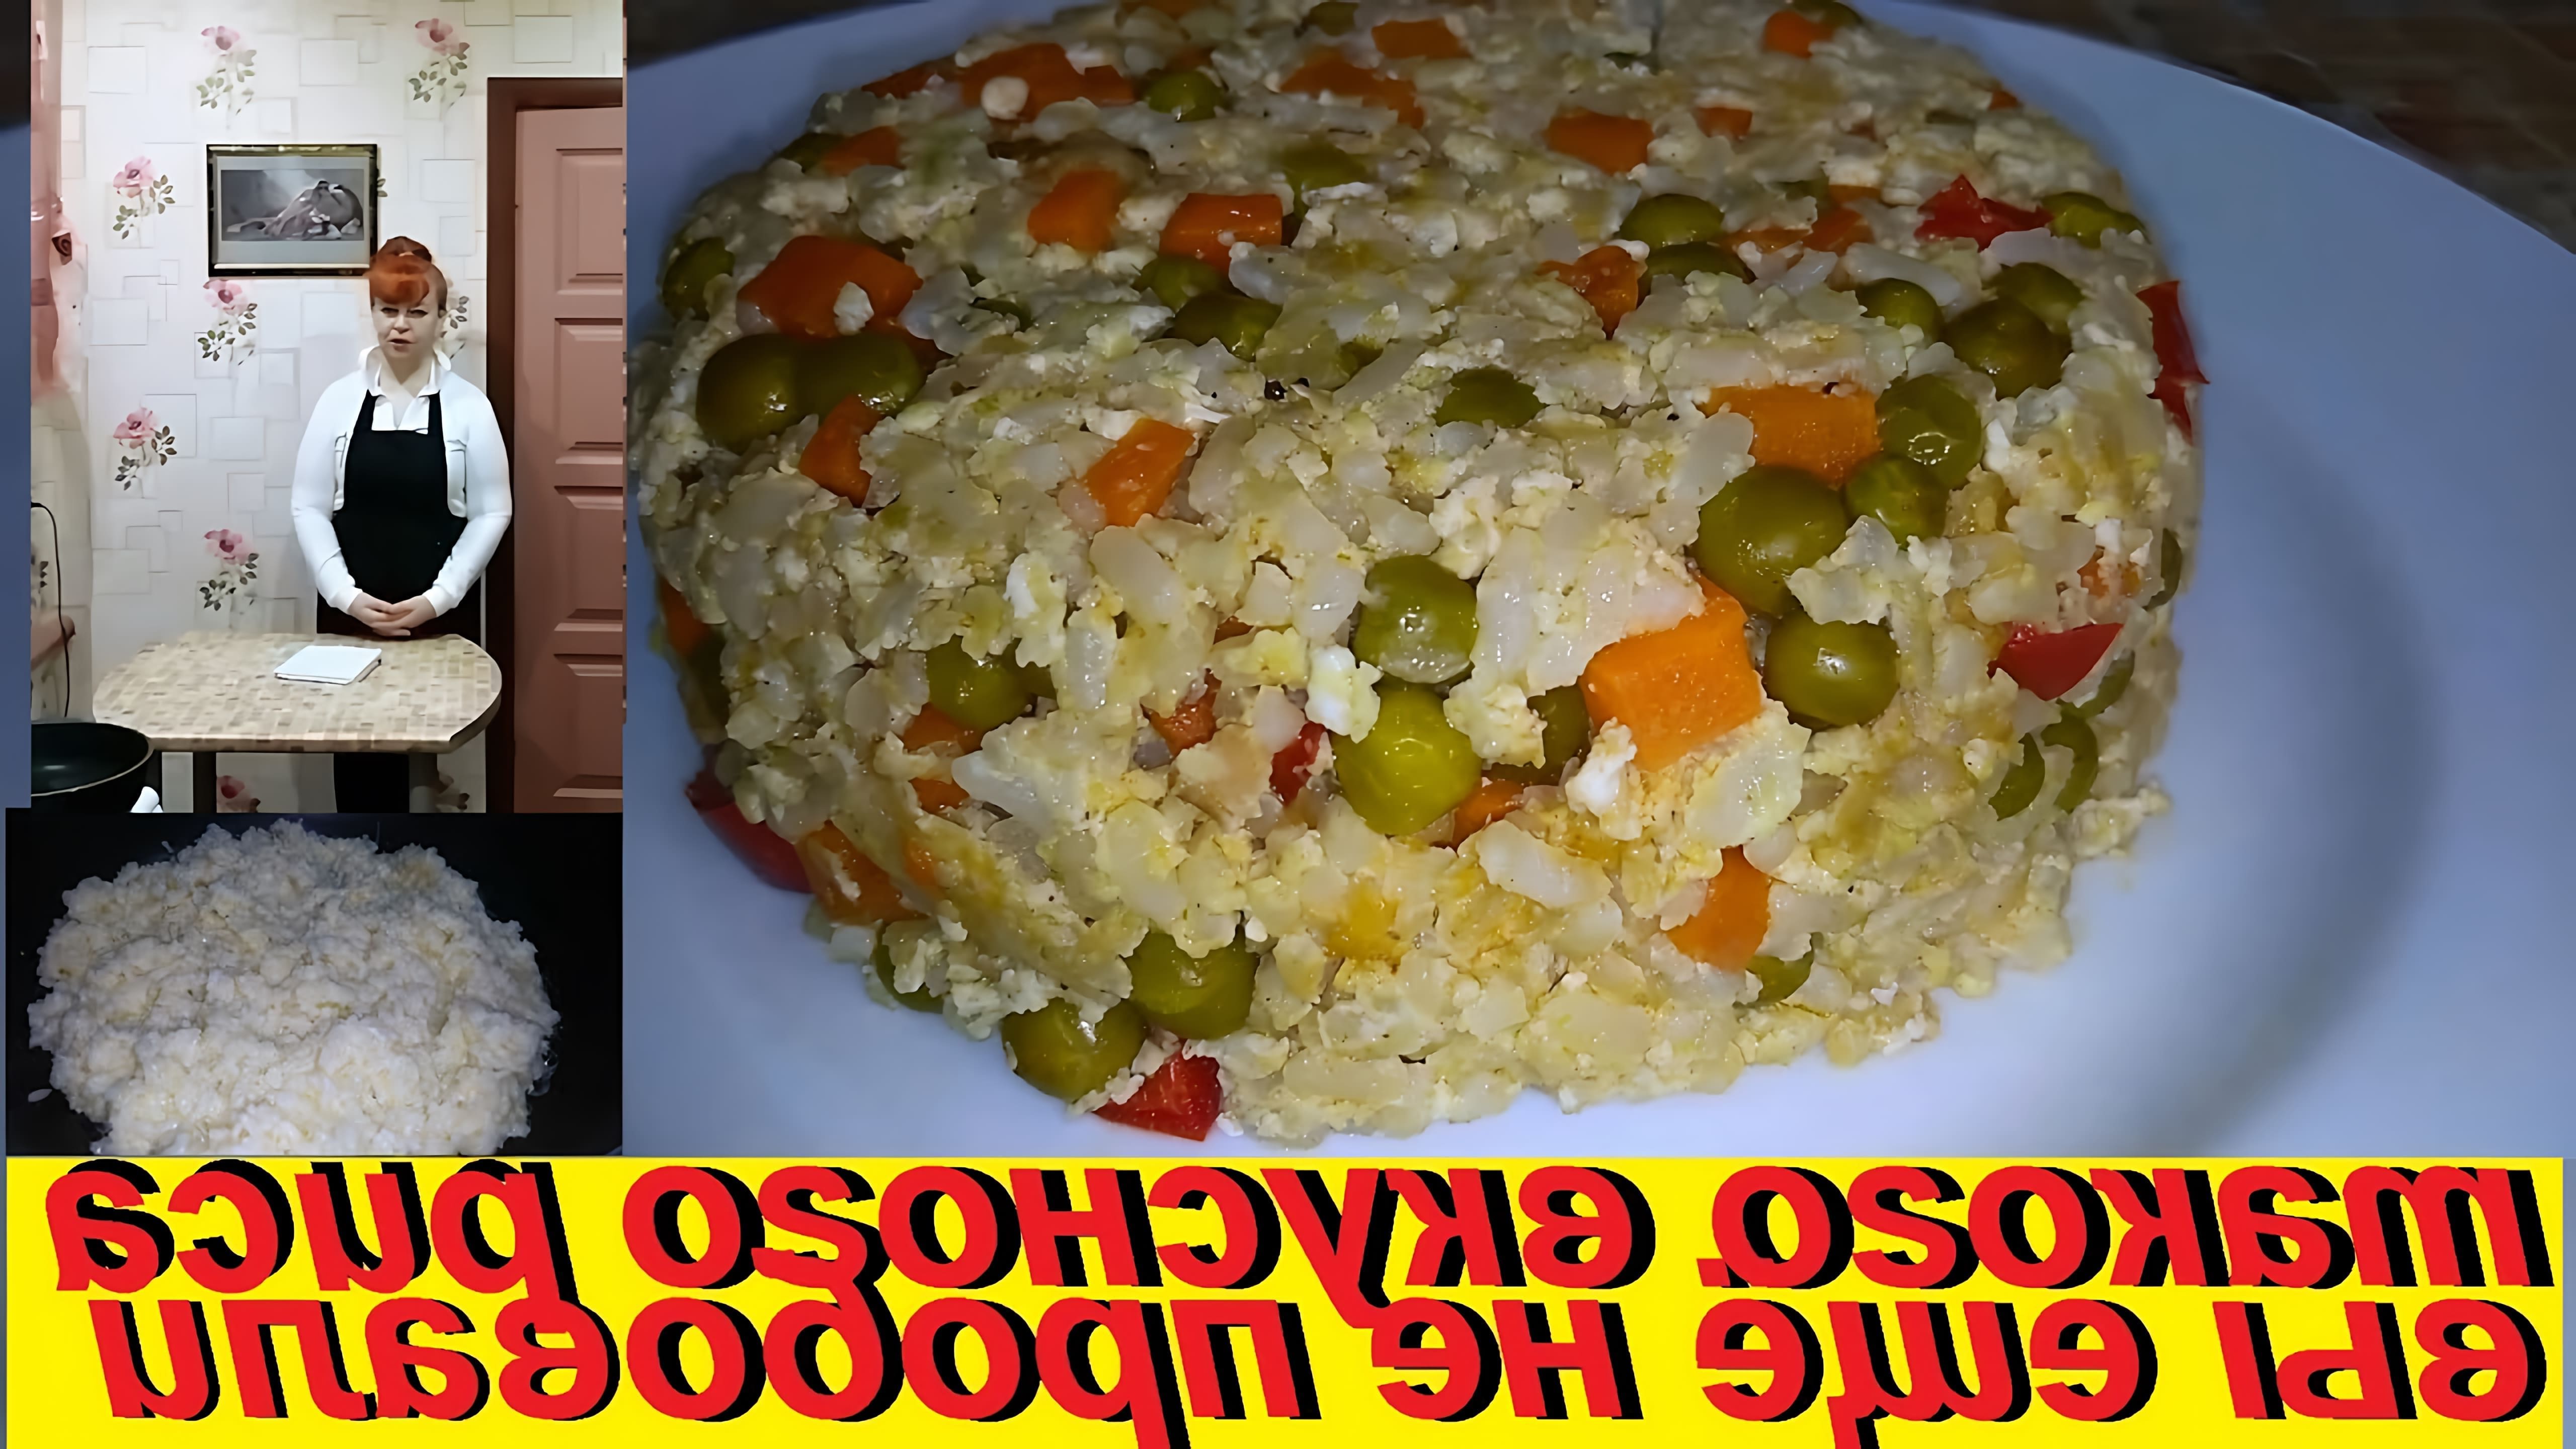 В этом видео Марина Чернова показывает, как приготовить вкусный и низкокалорийный рис